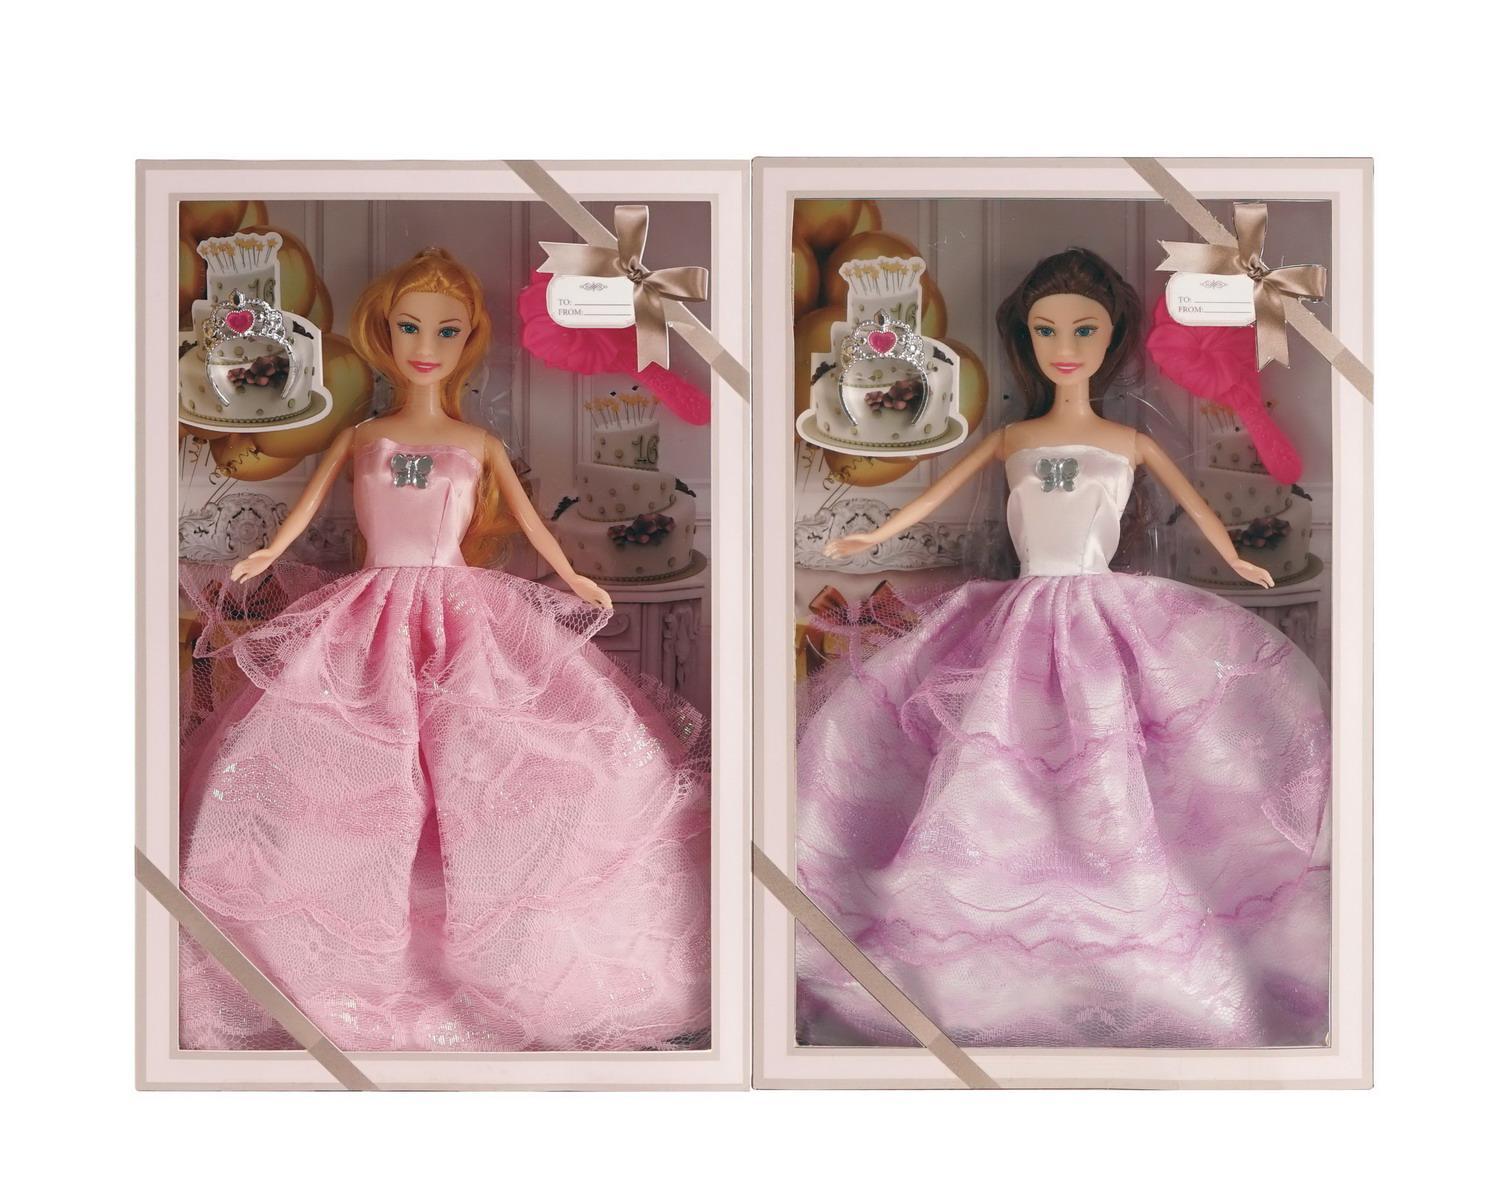 Купить Кукла Junfa Atinil в длинном платье в наборе c диадемой 28см WJ-21532, Junfa toys,